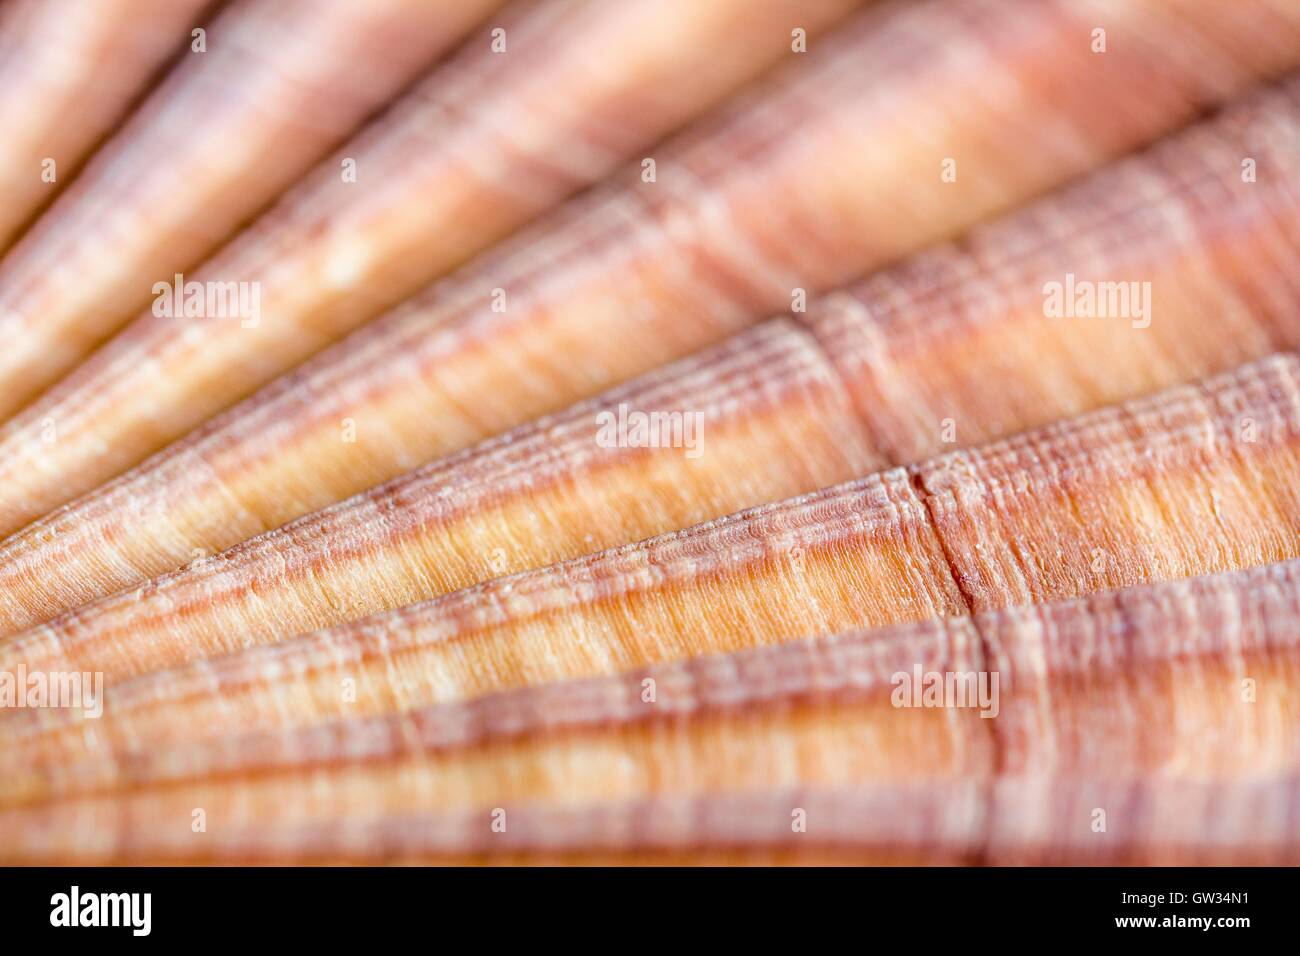 Rot-gerippt, Jakobsmuschel, Macrophotograph. Die Shell eine rot gerippt Jakobsmuschel (Aequipecten Glyptus), ein marine zweischaligen Weichtieren. Schalen von Muscheln bestehen aus zwei artikulierenden Teile oder Ventile. Horizontale Objektgröße von dieser Bildausschnitt: 15 mm. Stockfoto